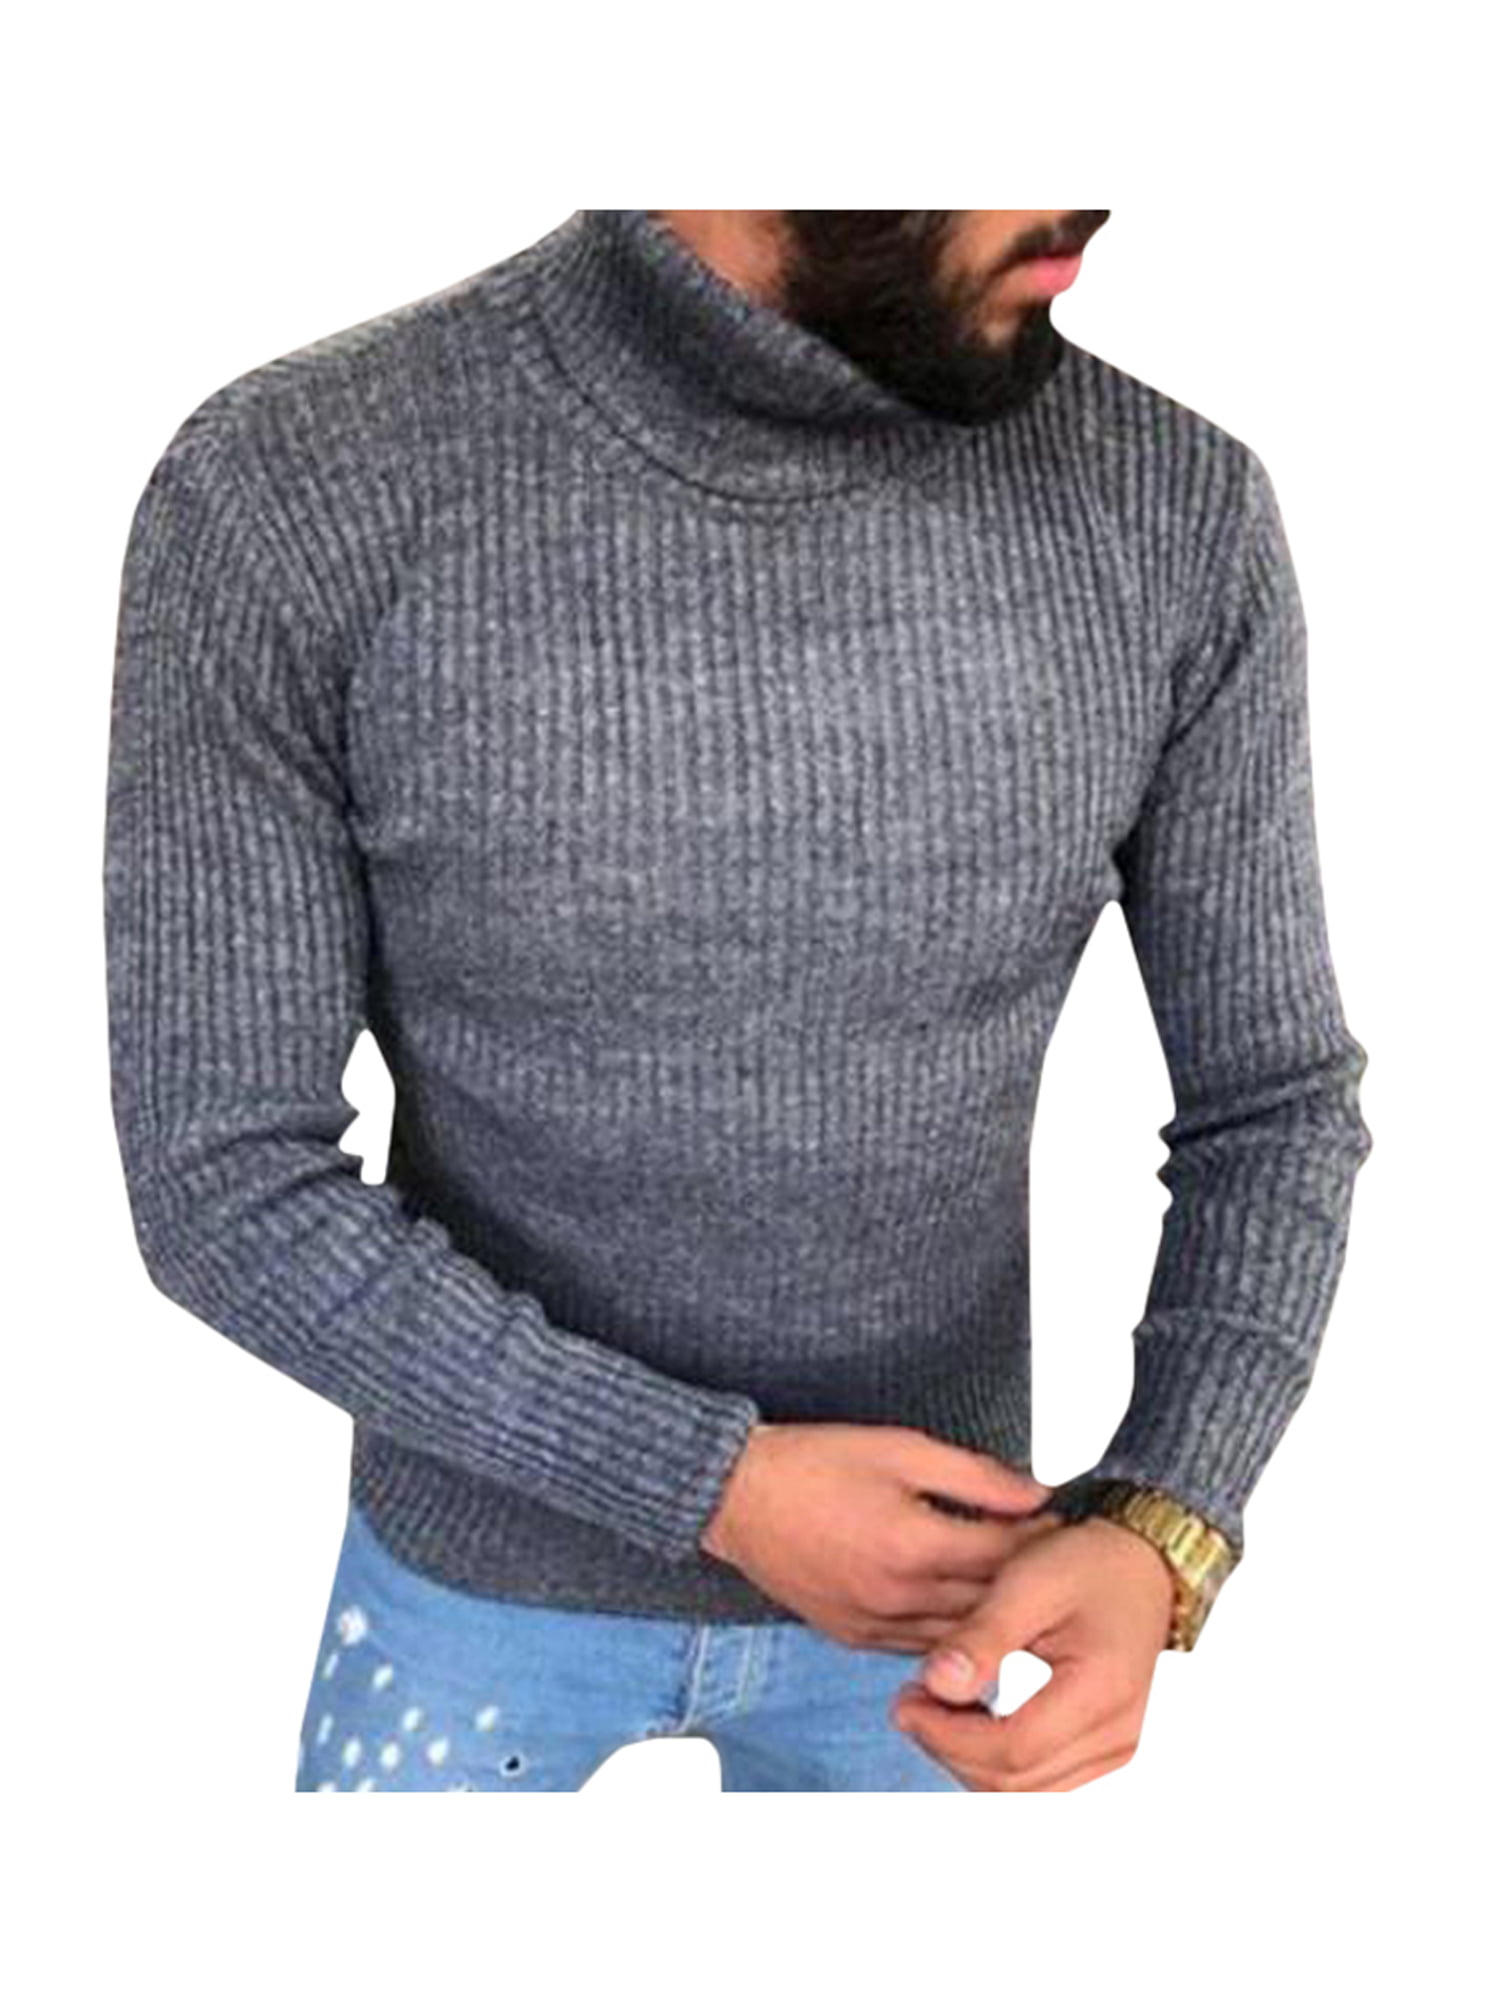 Wodstyle - Men's Turtleneck Knitwear Jumper Long Sleeve Pullover Tops ...